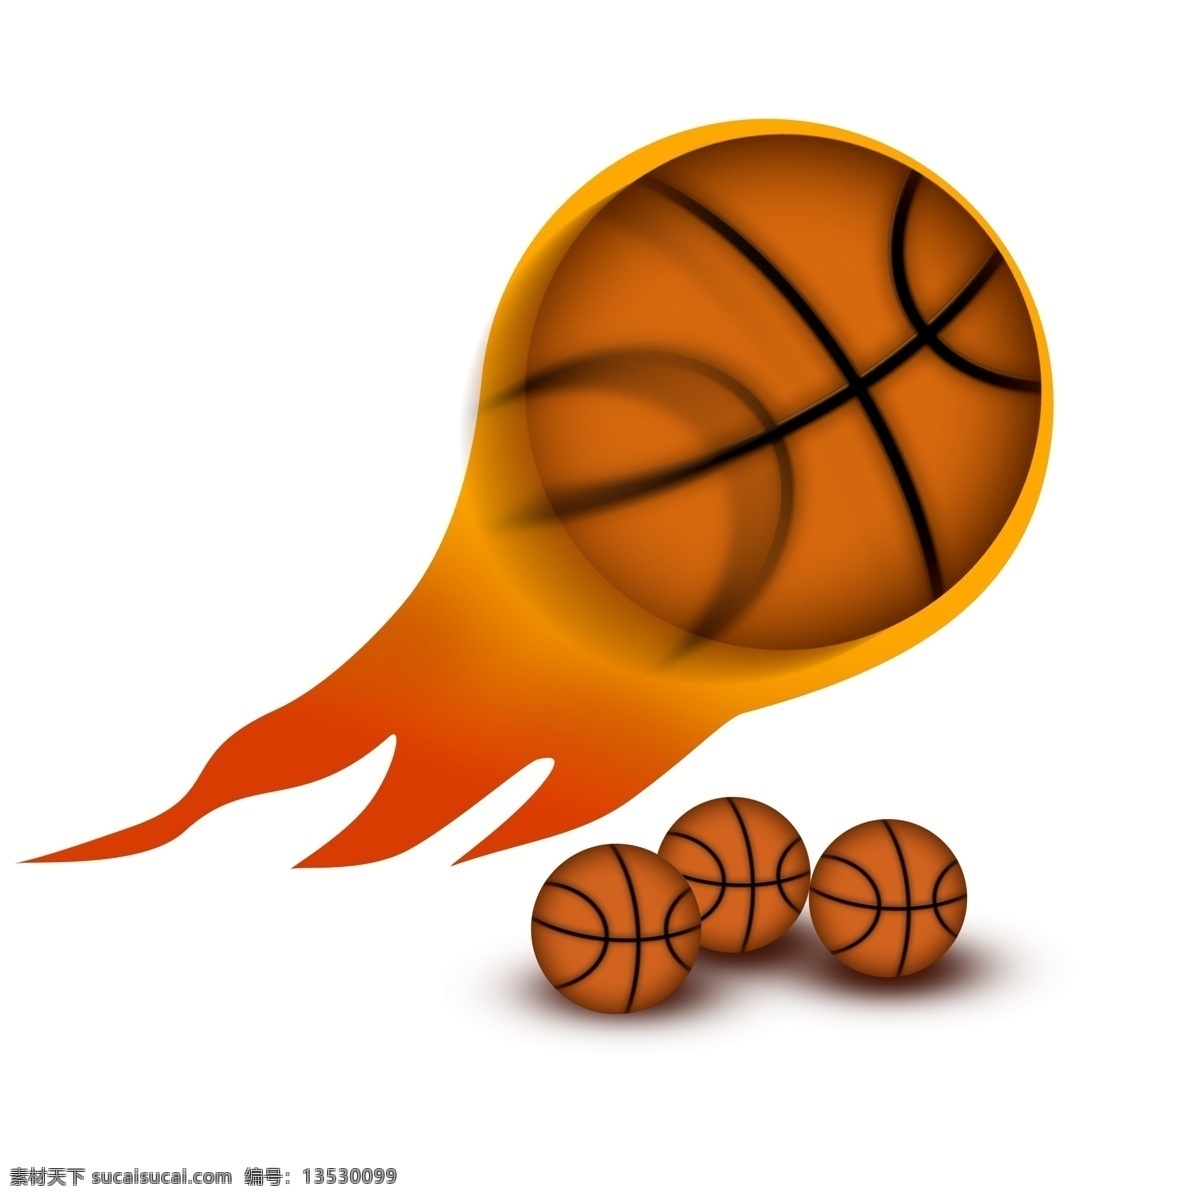 带 火 篮球 飞快 夸张 效果 篮球素材 篮球元素 带火篮球 篮球图案 篮球日